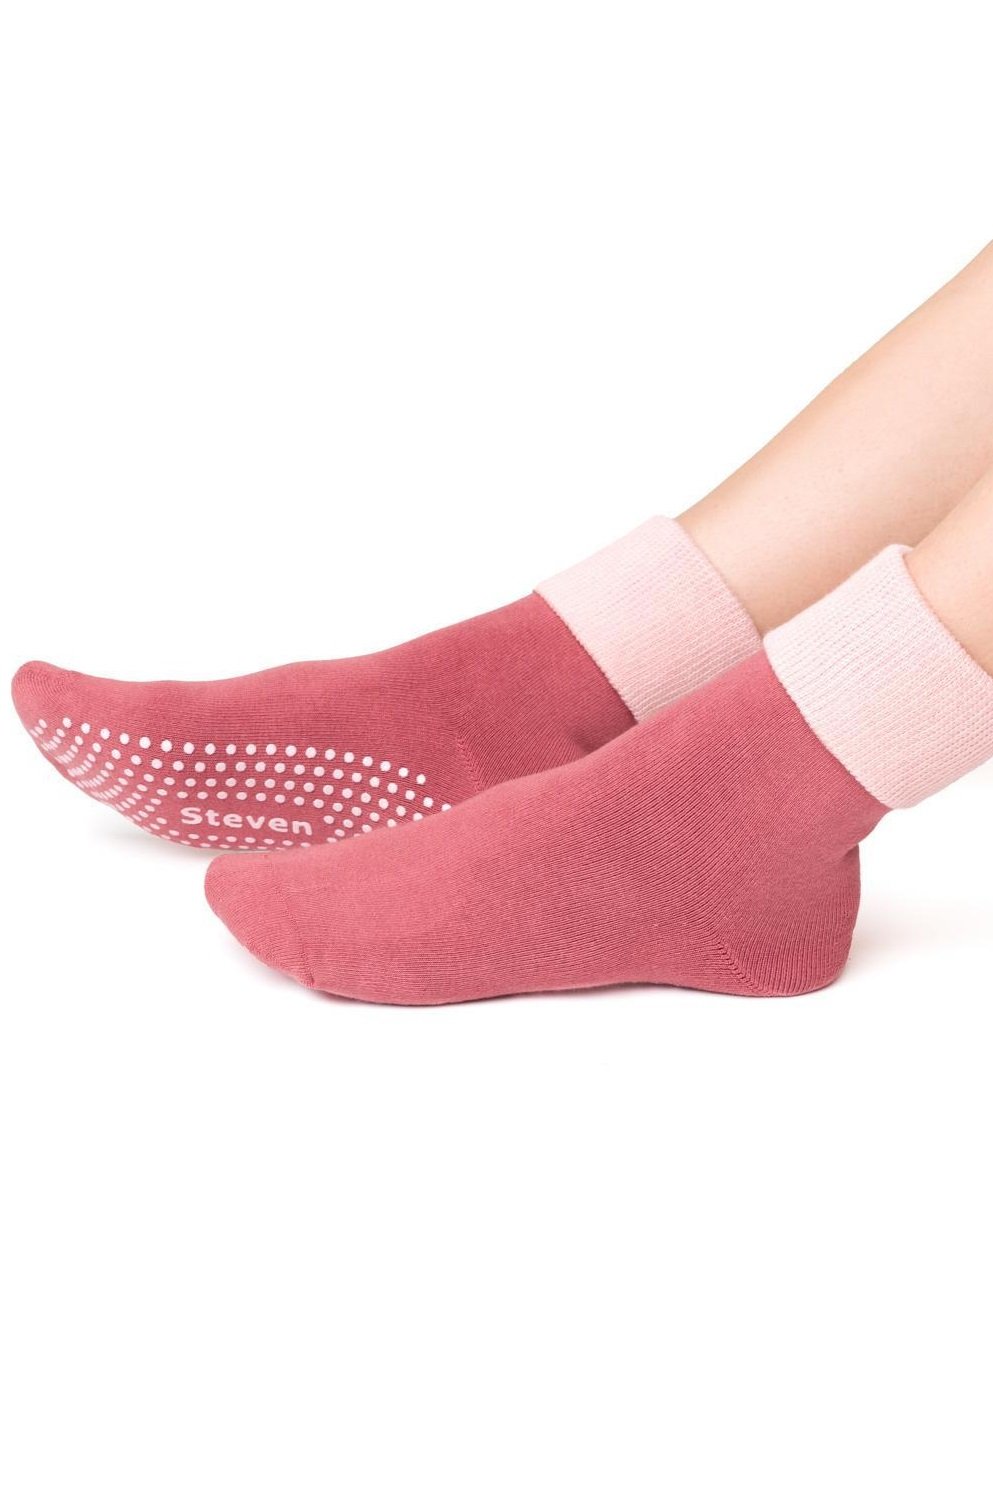 Шкарпетки Steven 126 /020, 35-37, рожевий